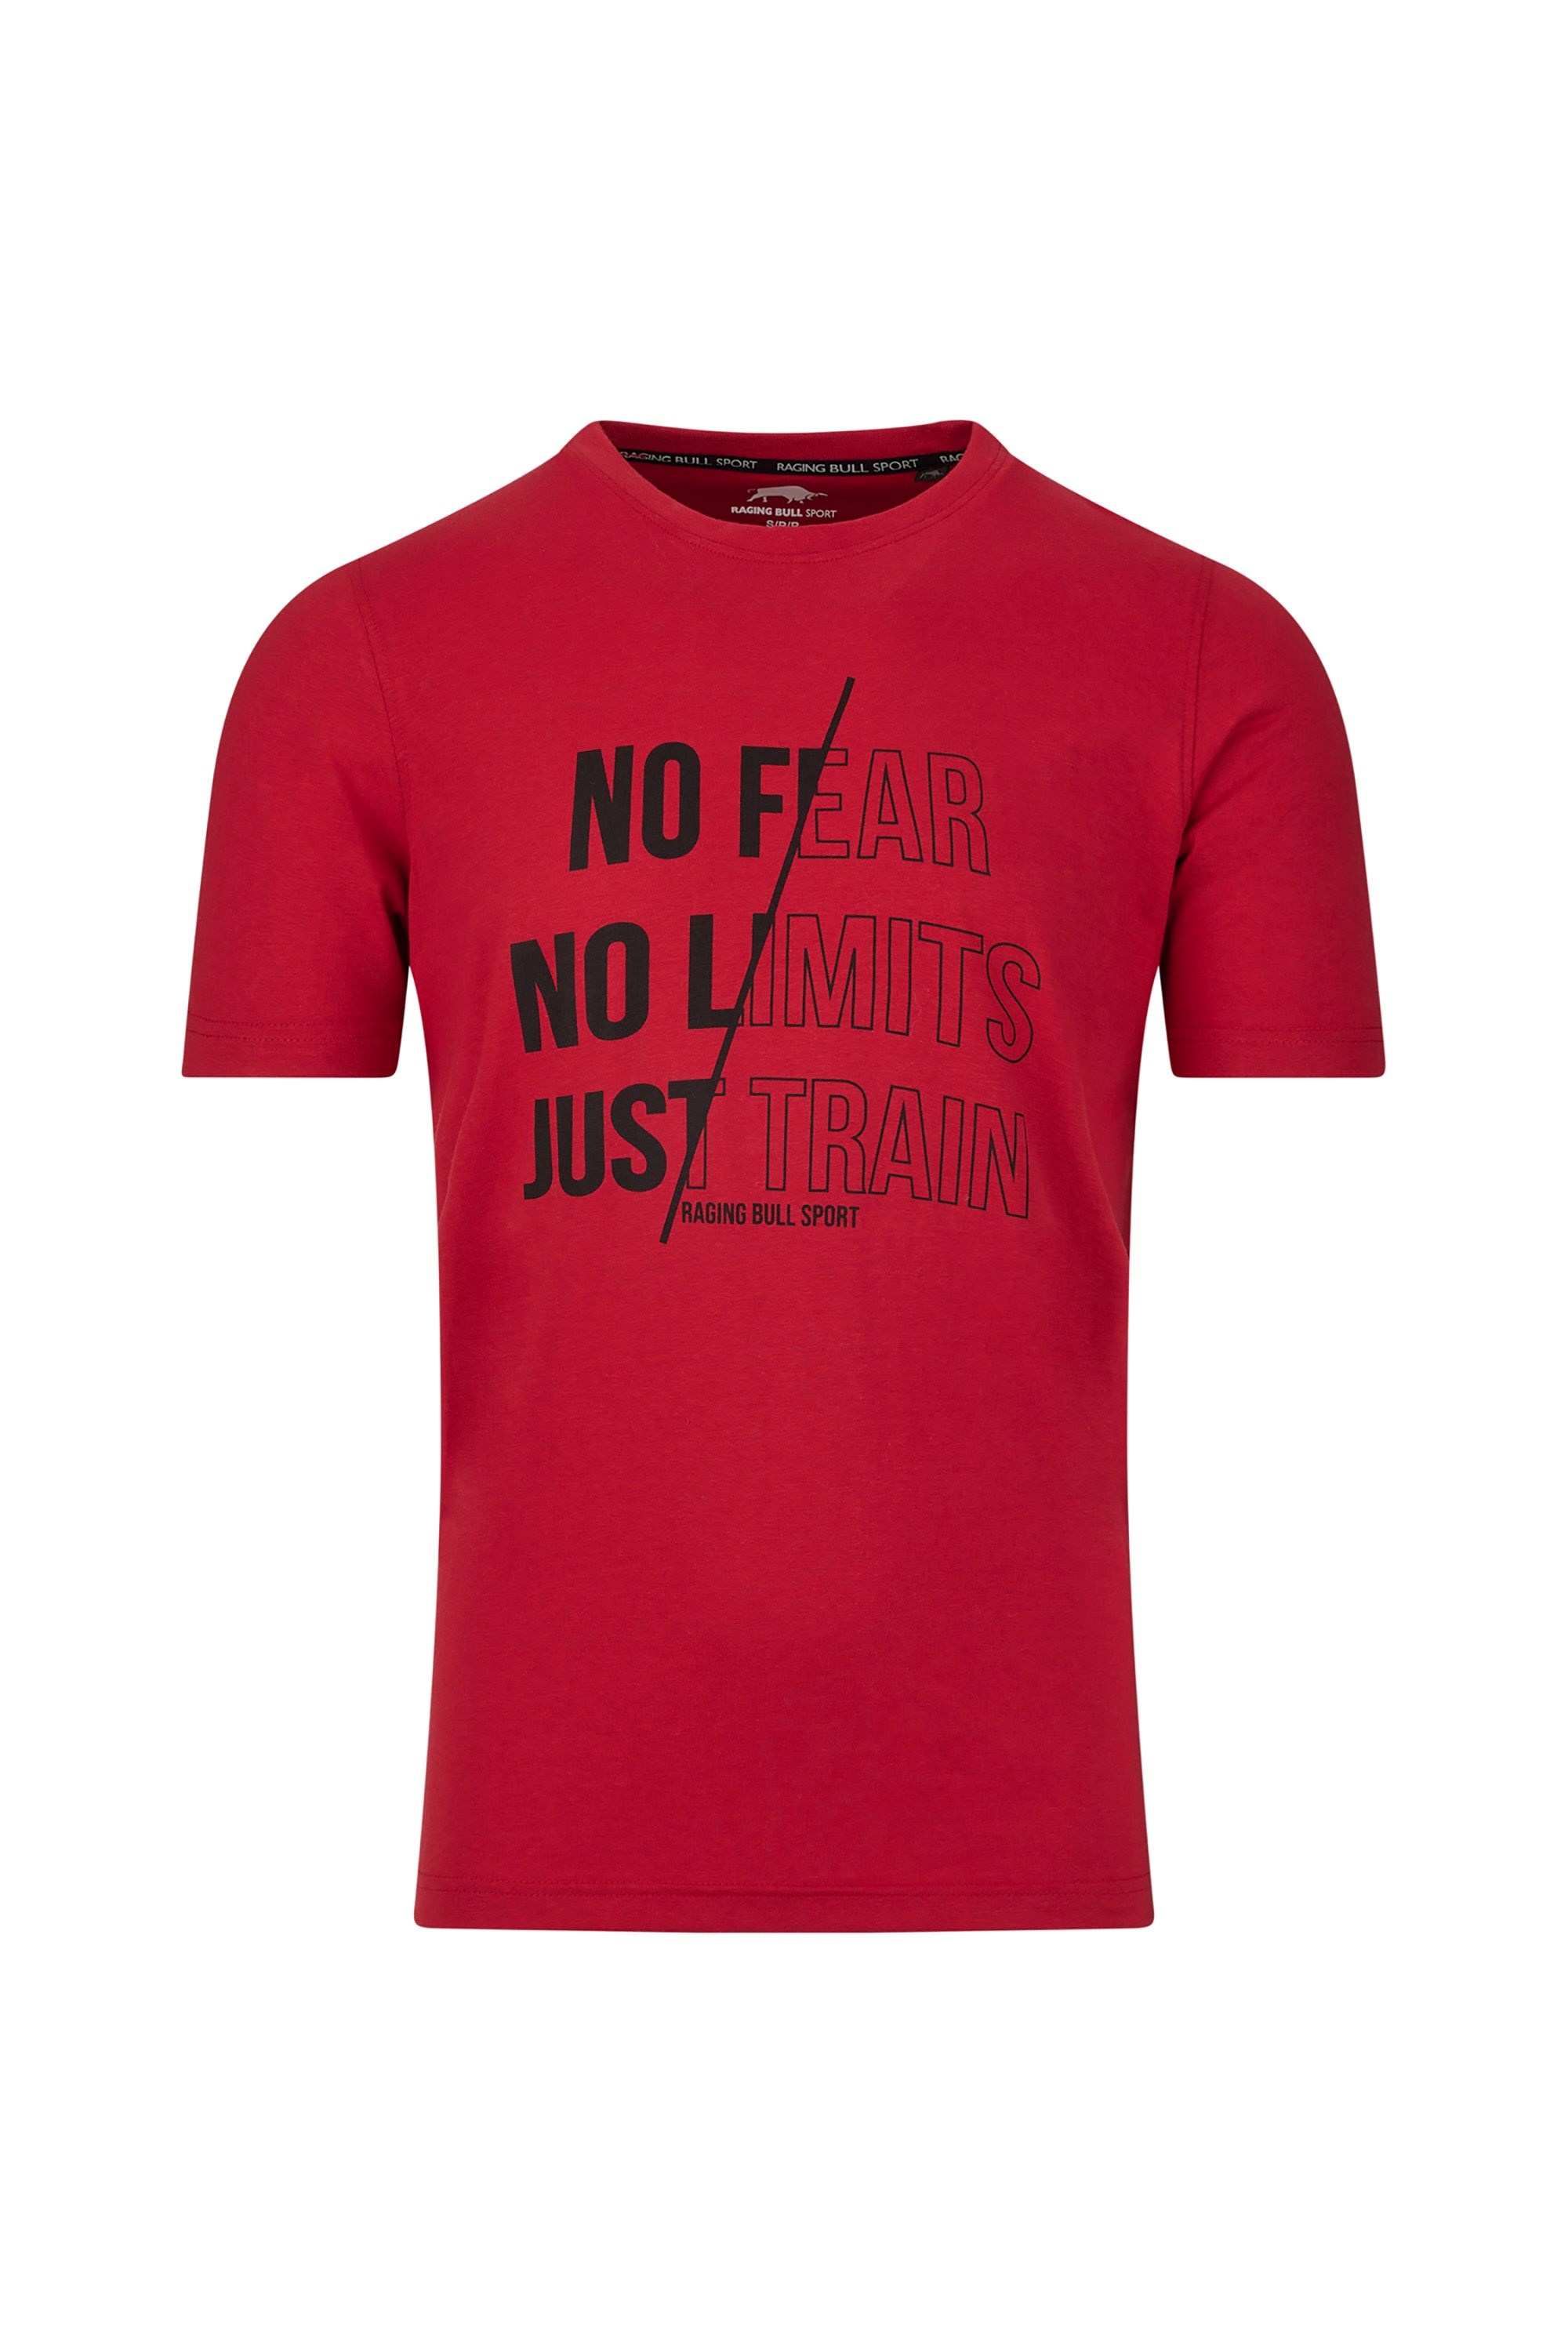 RB Sport No Limits Mens T-Shirt -